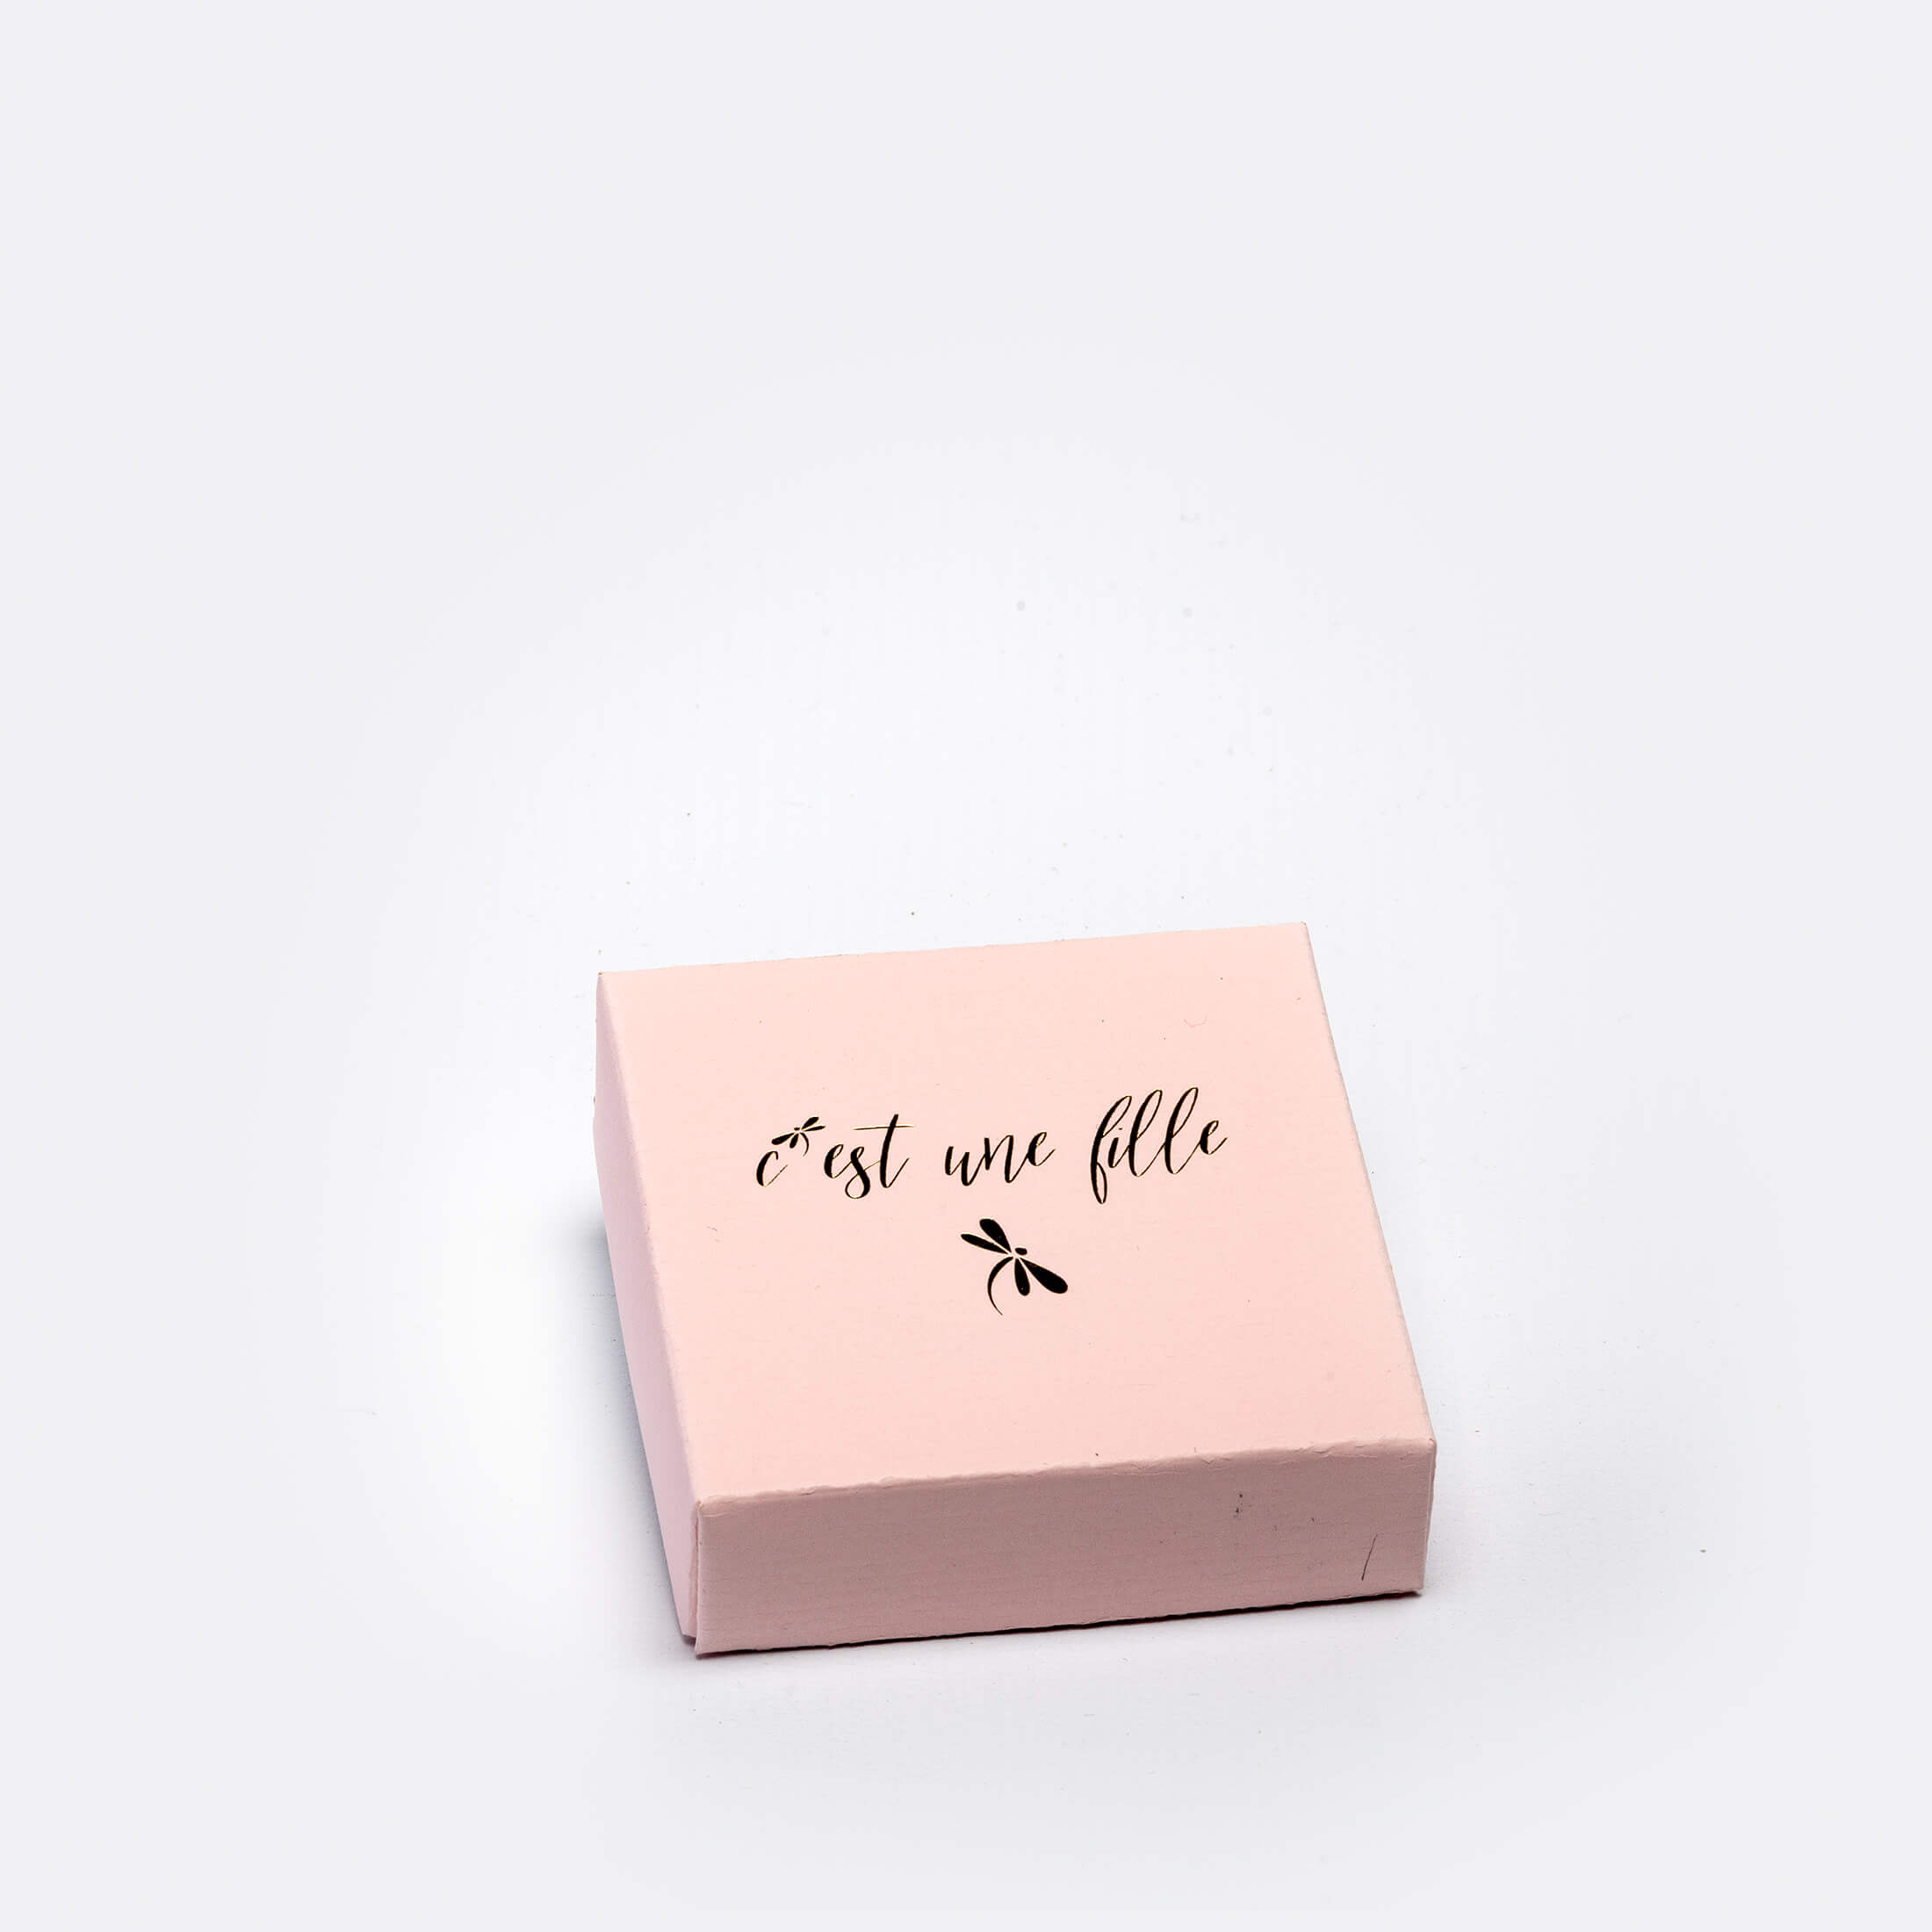 Boîte carrée pour dragées, 2 pièces, 5 x 5 cm., avec impression "c'est une fille"